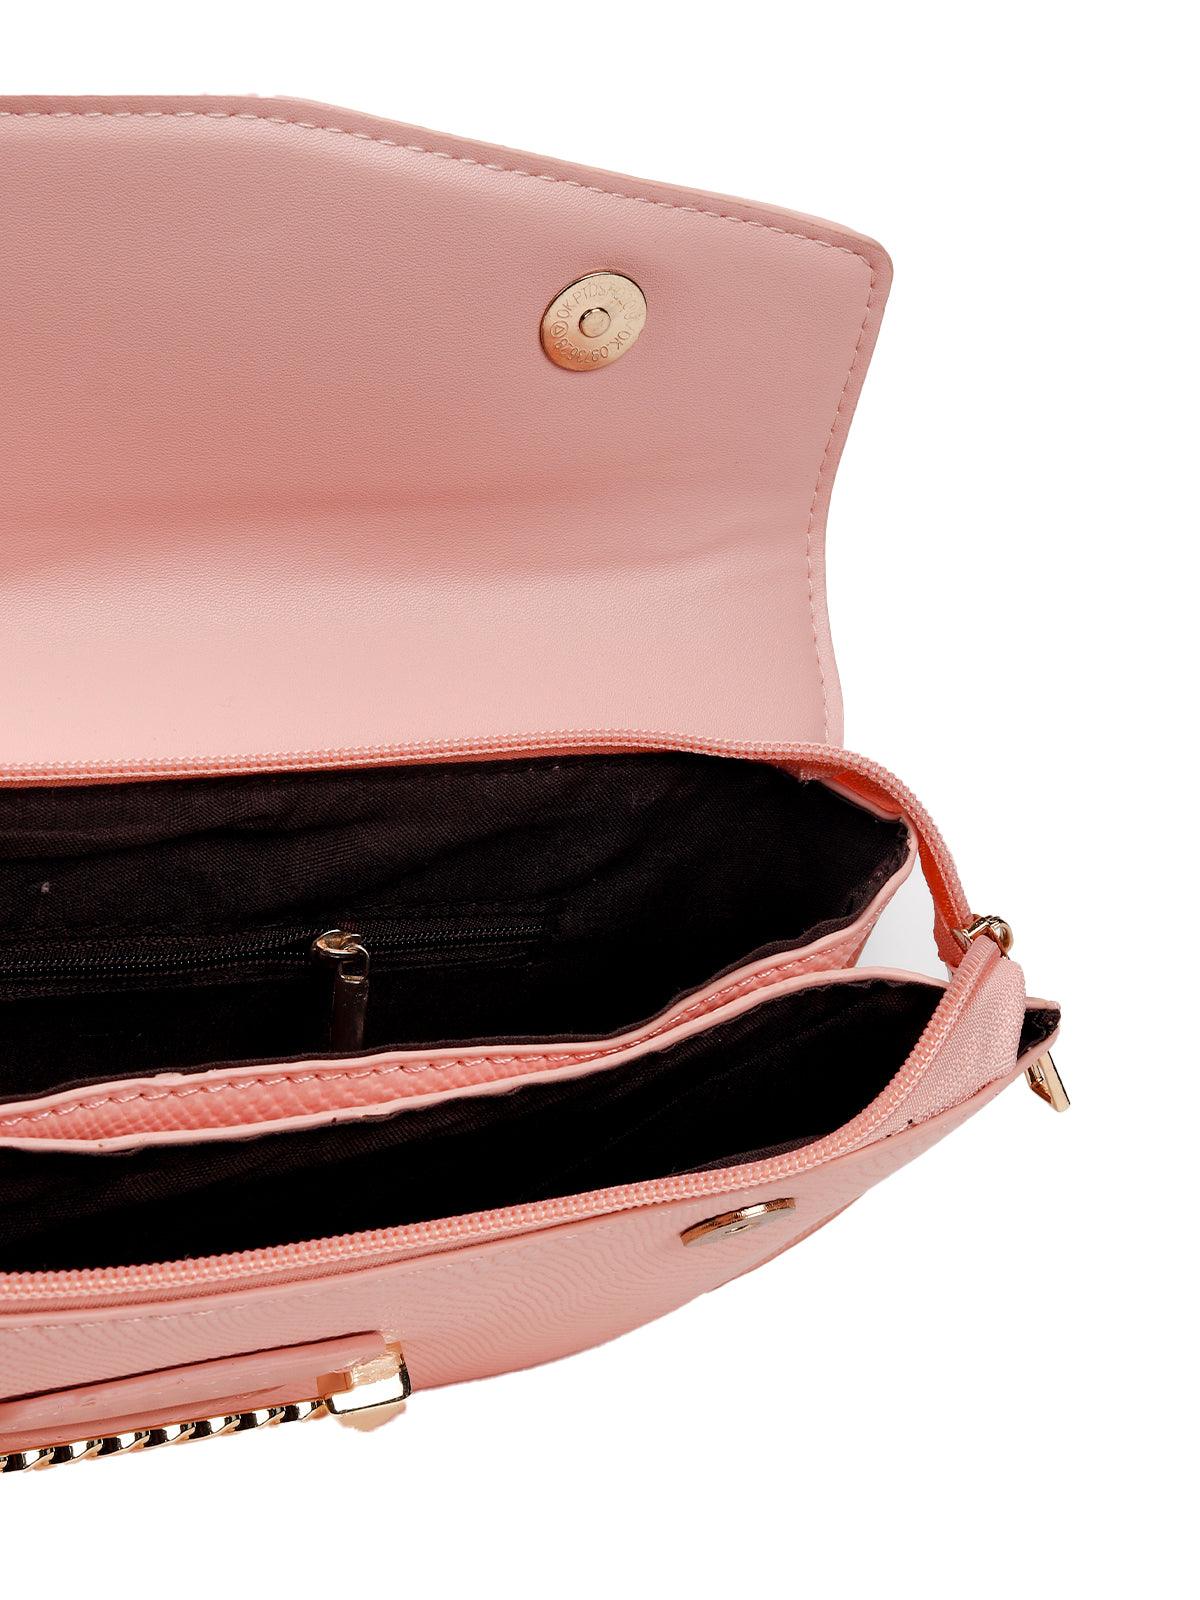 Creamy Baby Pink Sling Bag - Odette